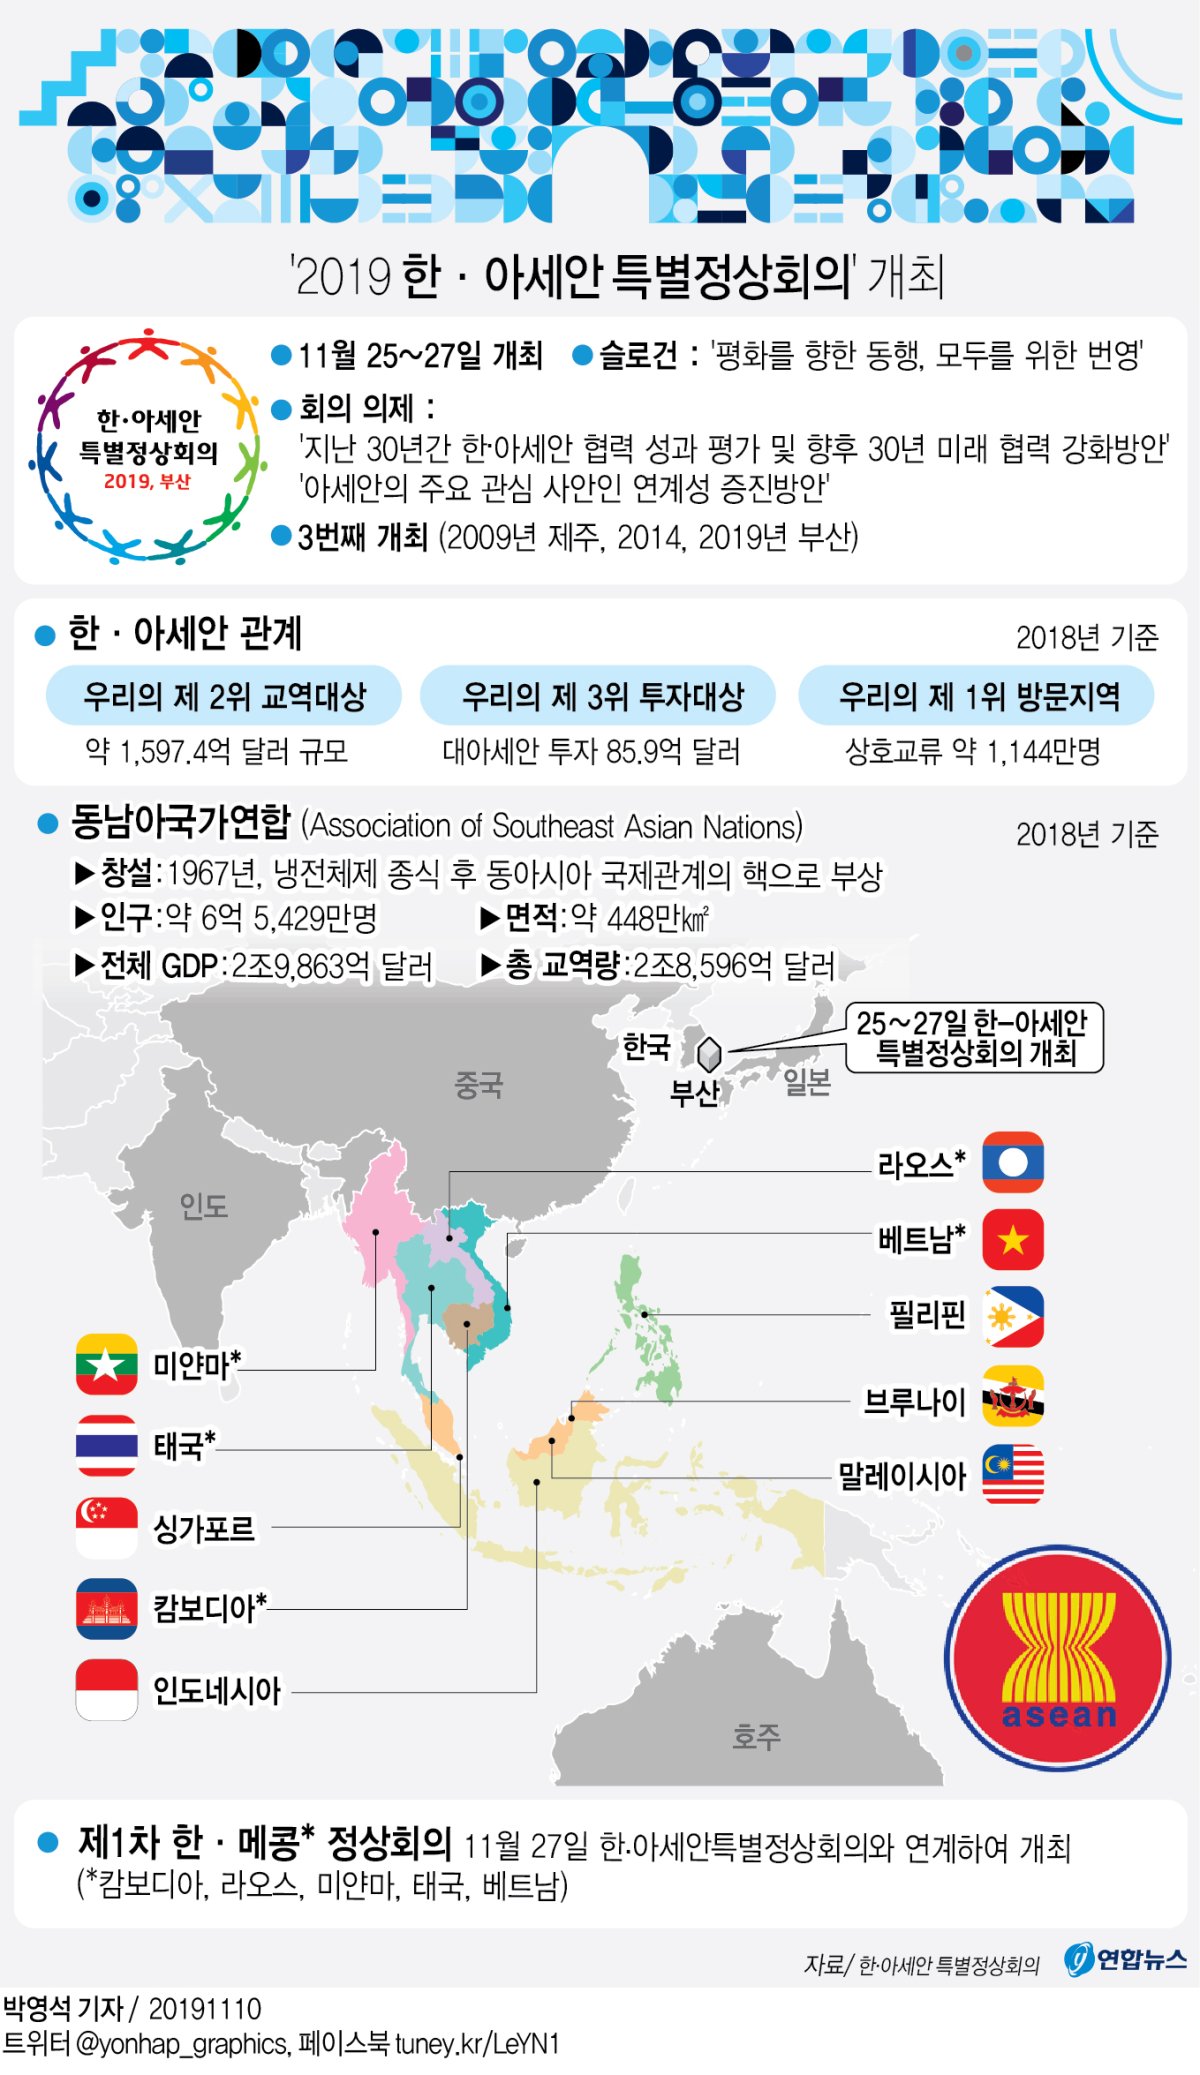 [그래픽] '2019 한·아세안 특별정상회의' 개최